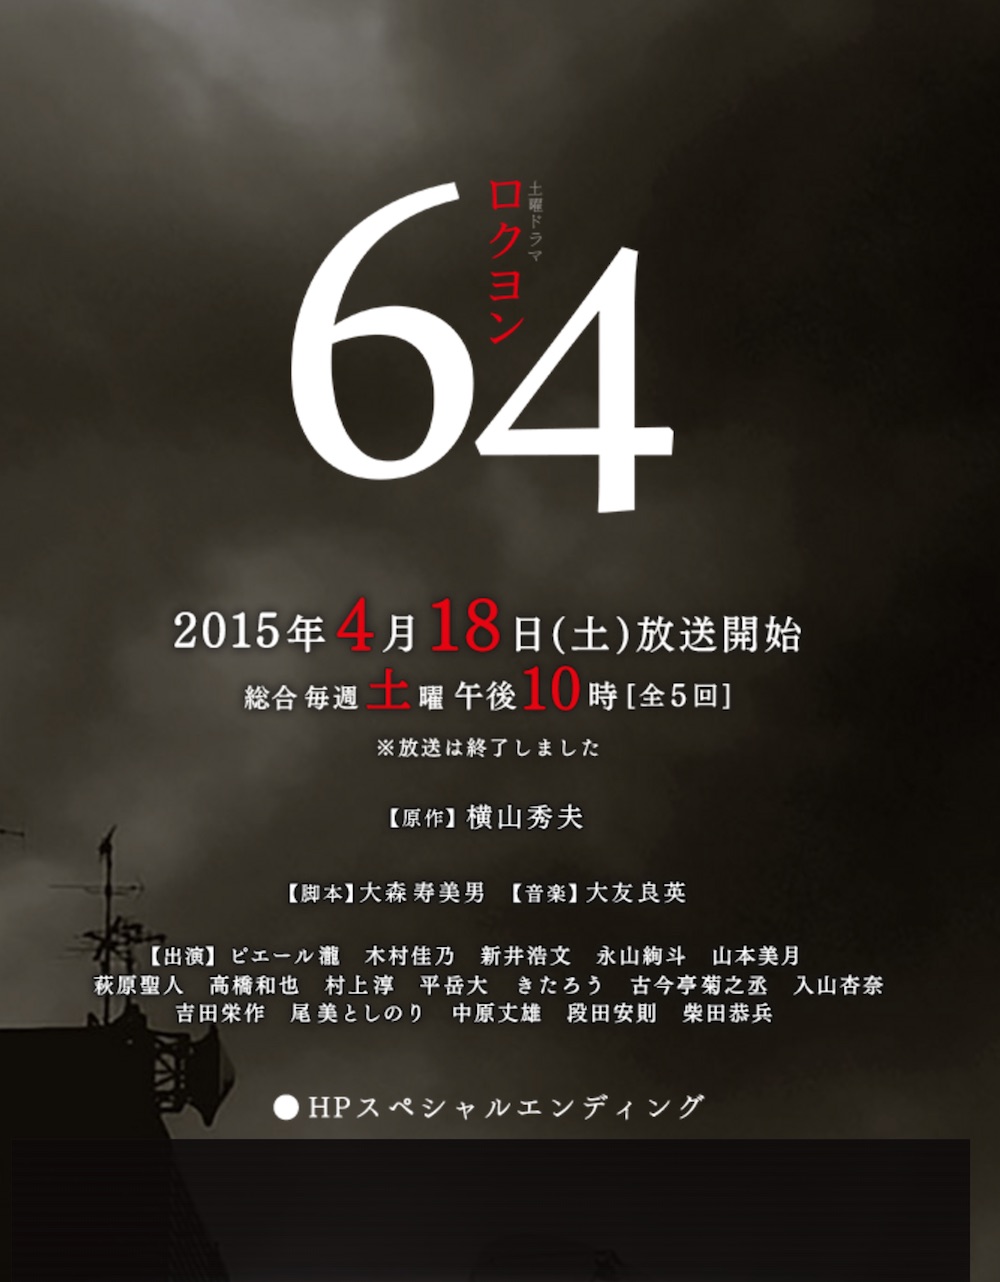 64-NHK-2015-p01.jpg